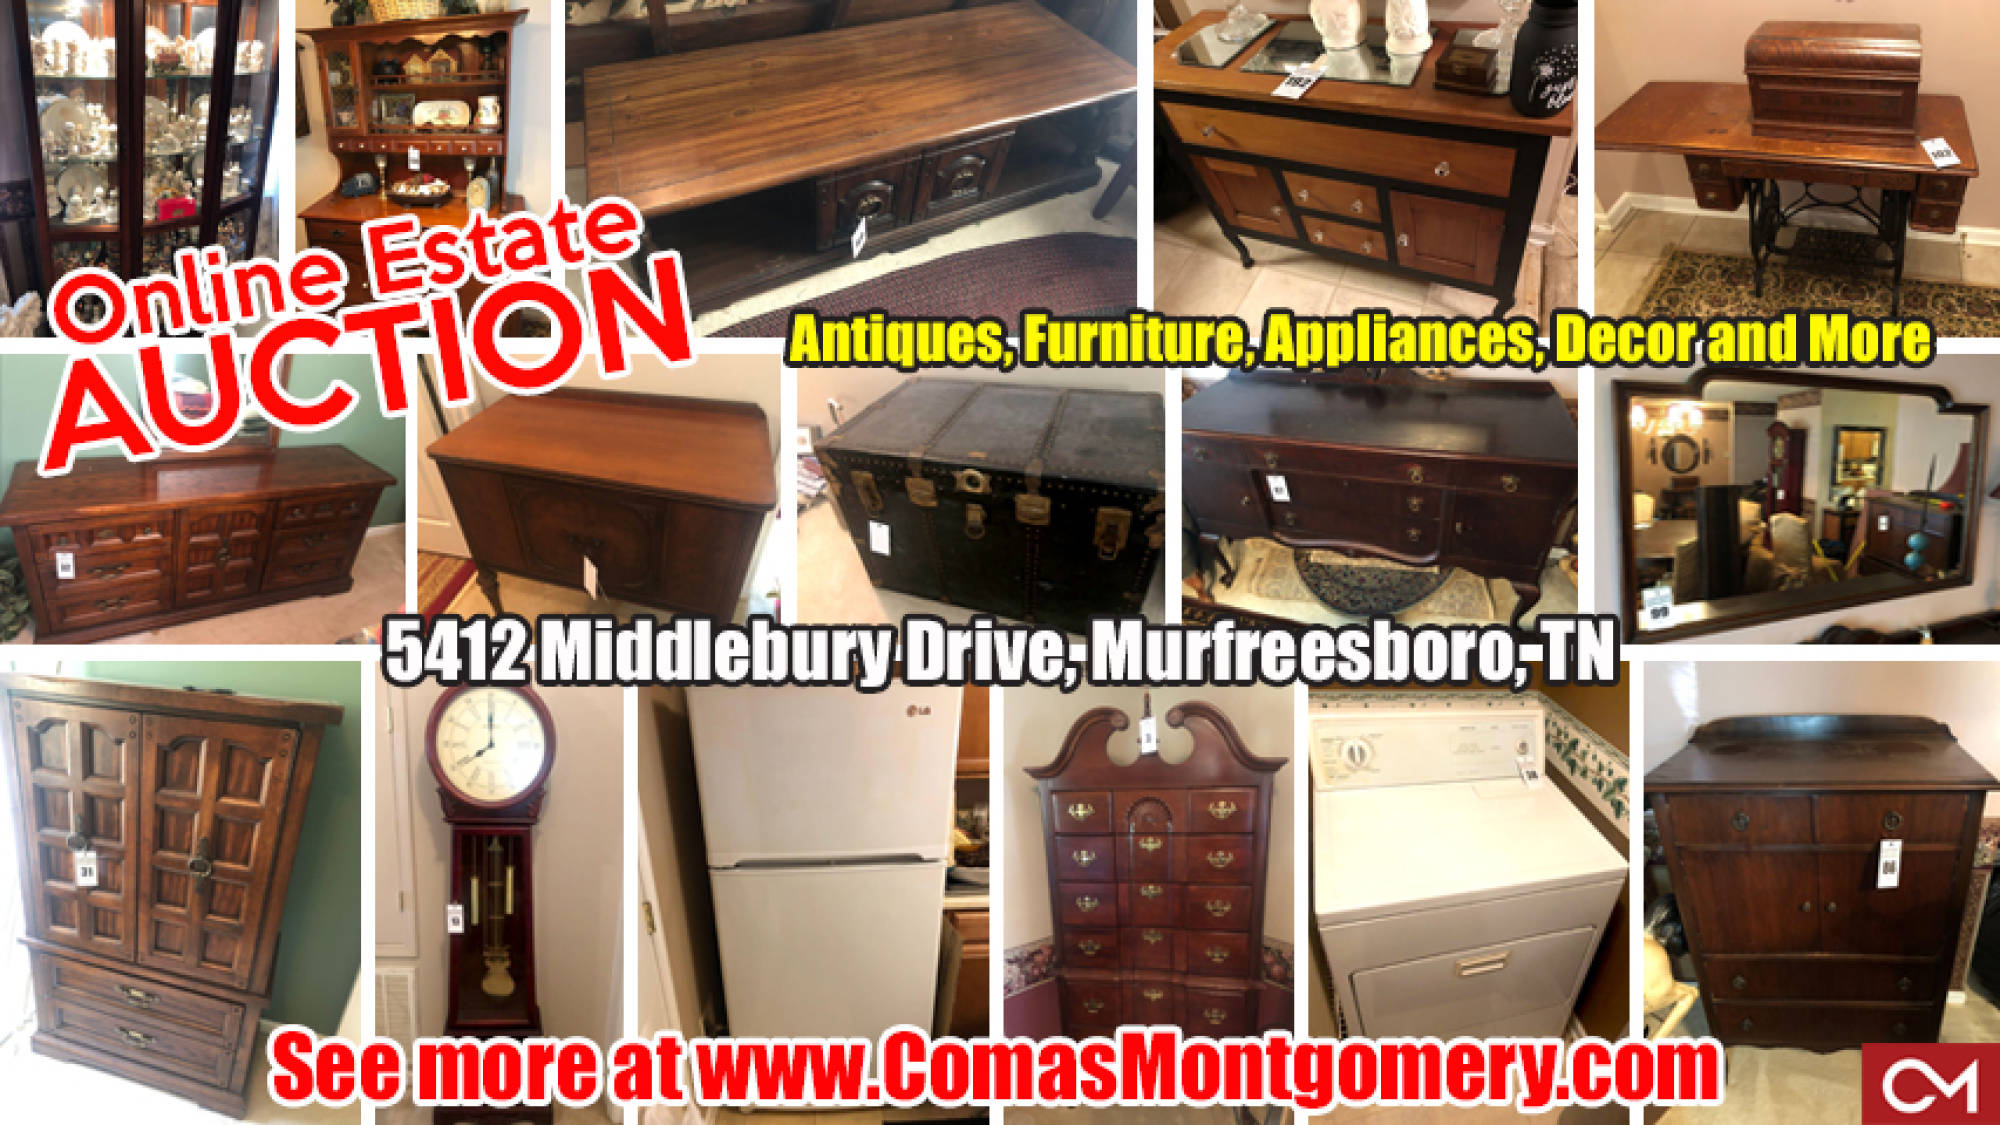 Antiques, Furniture, Appliances, For Sale, Auction, Estate, Sale